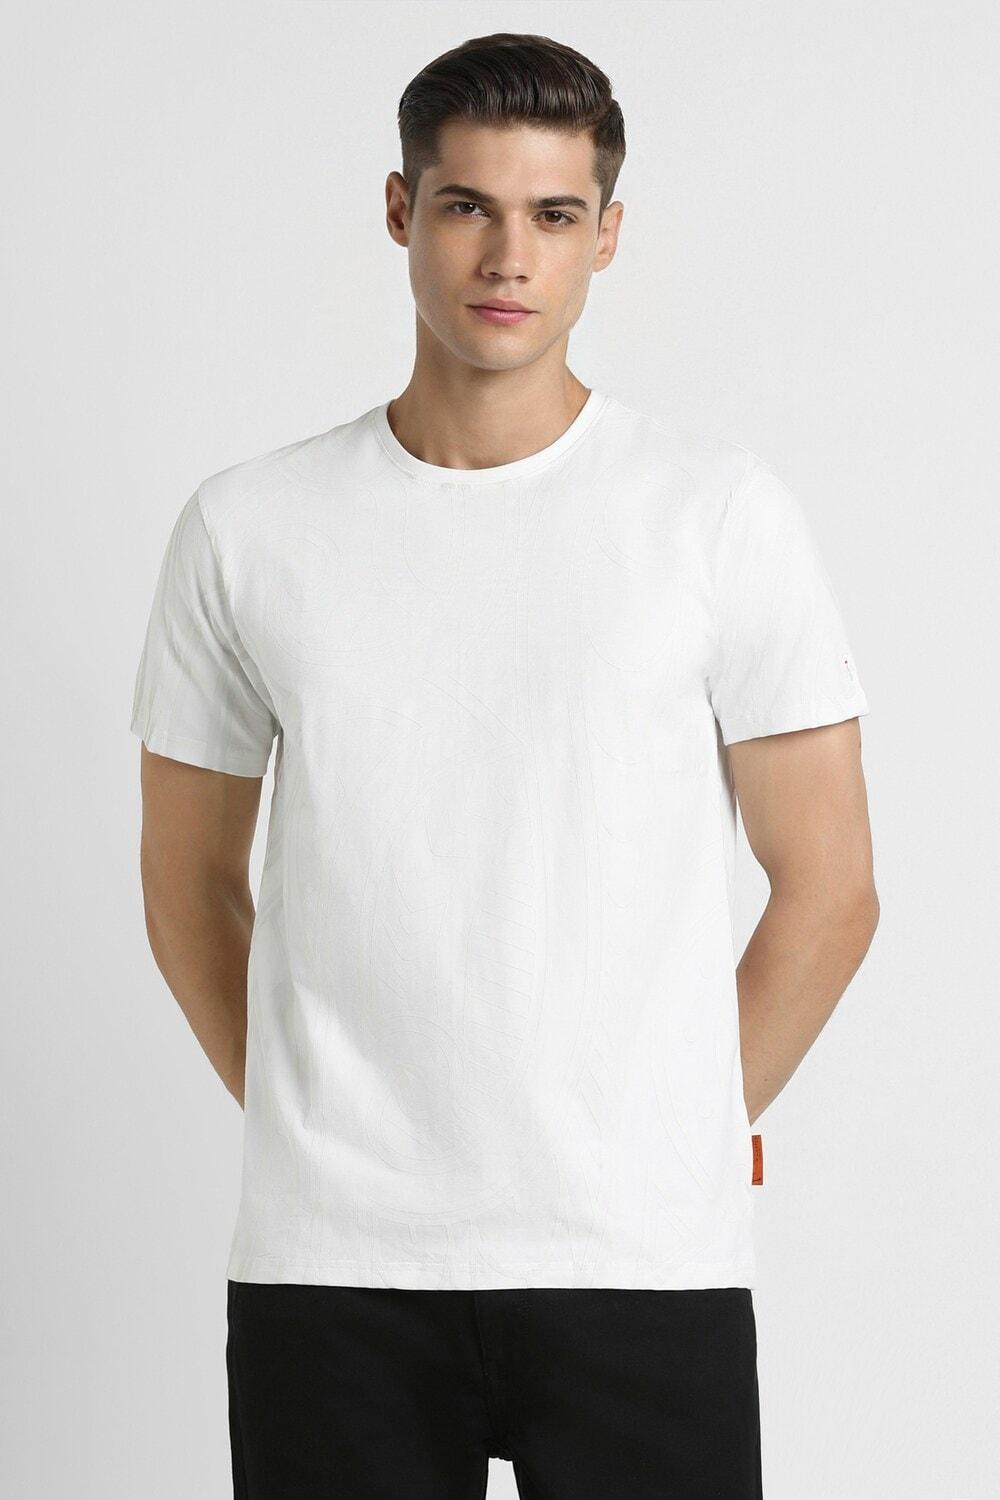 Simon Carter White Tshirt For Men